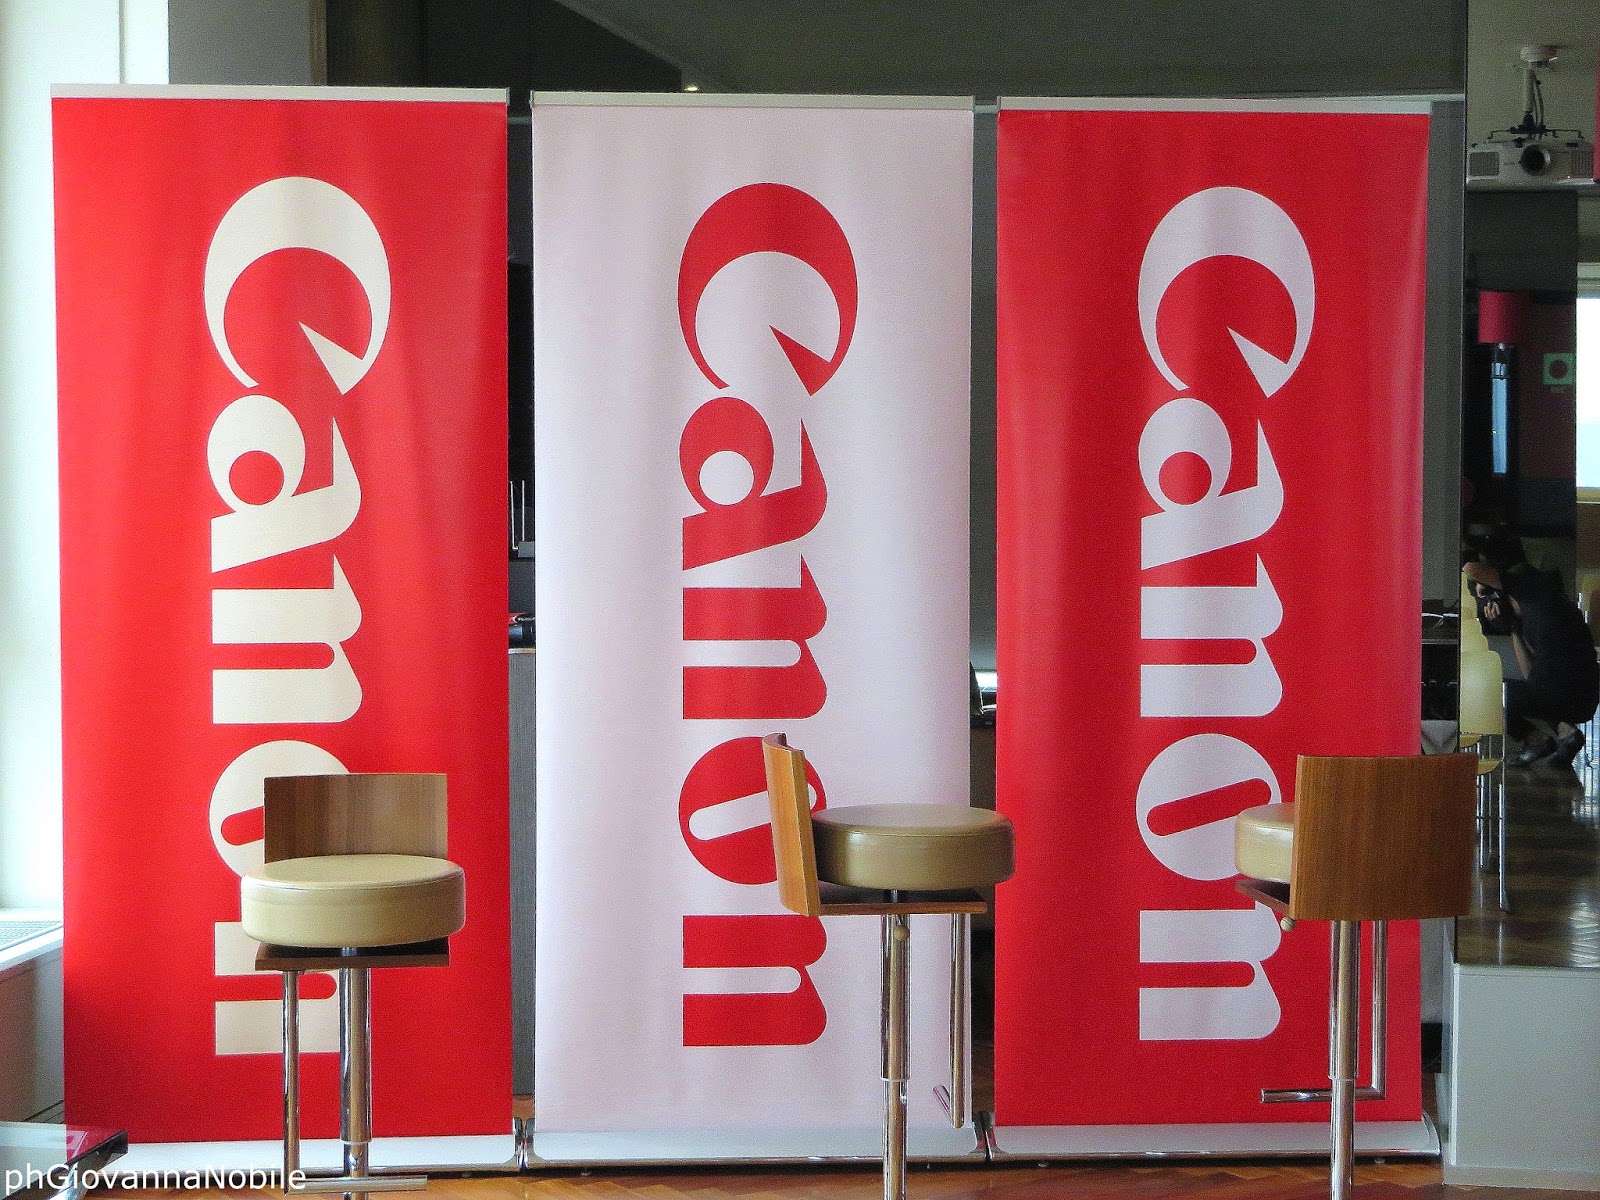 Canon 2014 - Conferenza Stampa